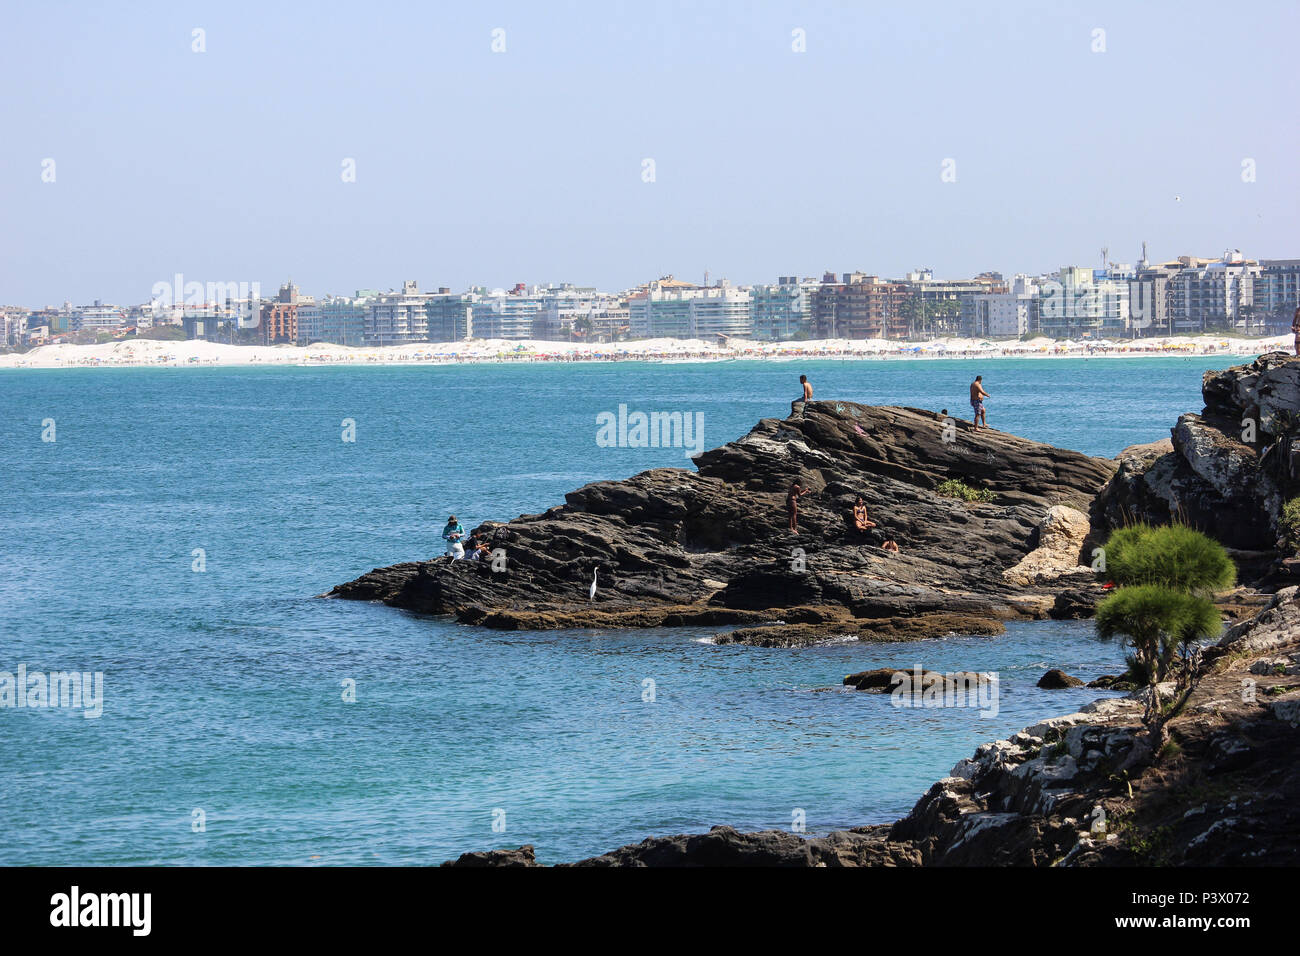 Praia do Forte vista de rochas nas imediações do Forte São Mateus. Principais pontos turísticos de Cabo Frio, na Região dos Lagos, no de Río de Janeiro. Foto de stock